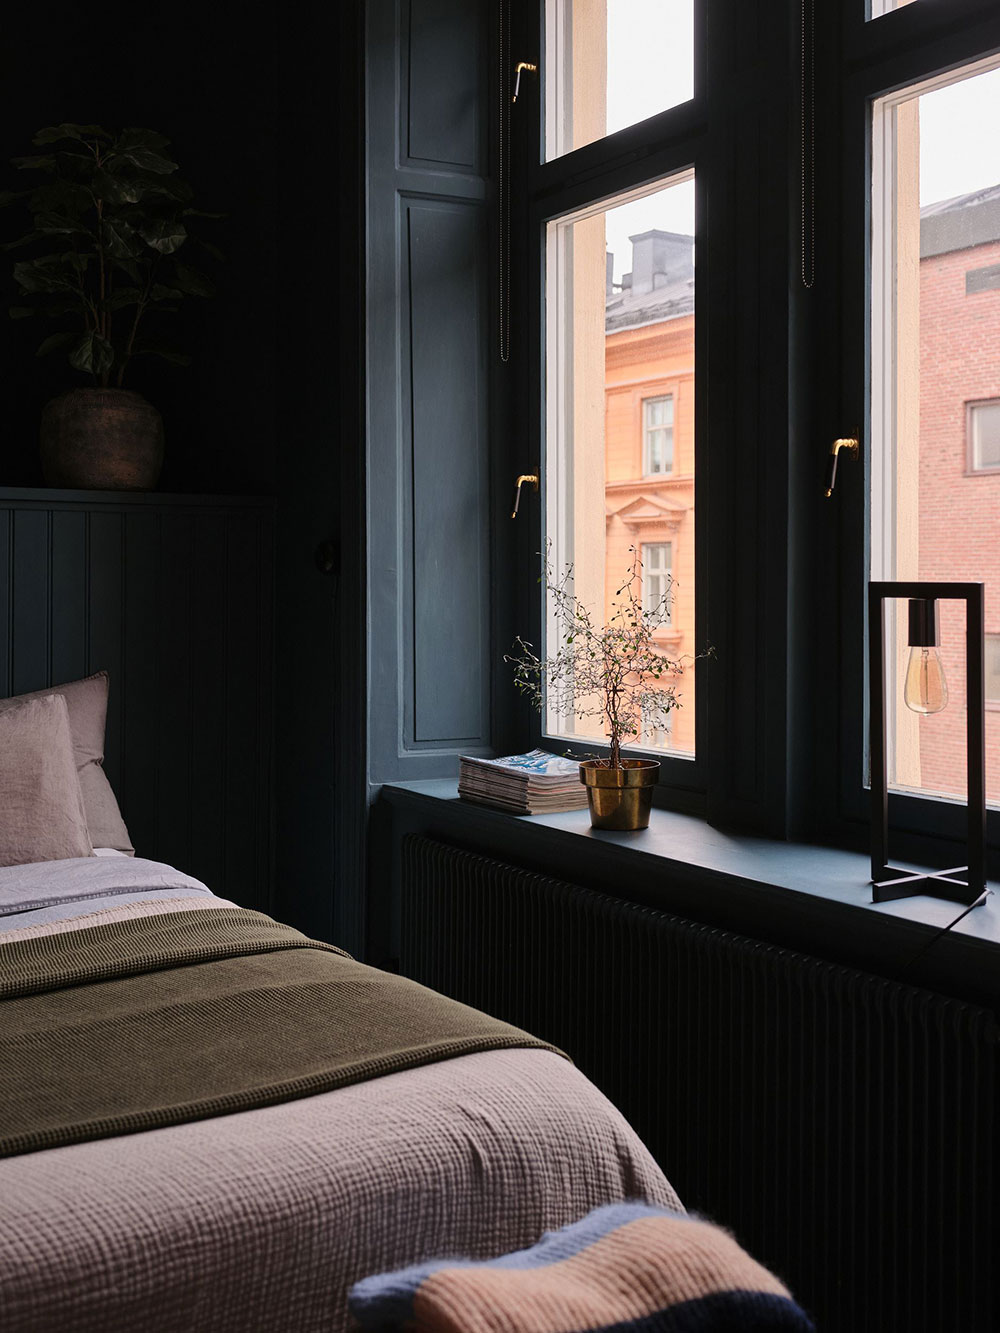 Скандинавская квартира с маленькой чёрной спальней (56 кв. м)